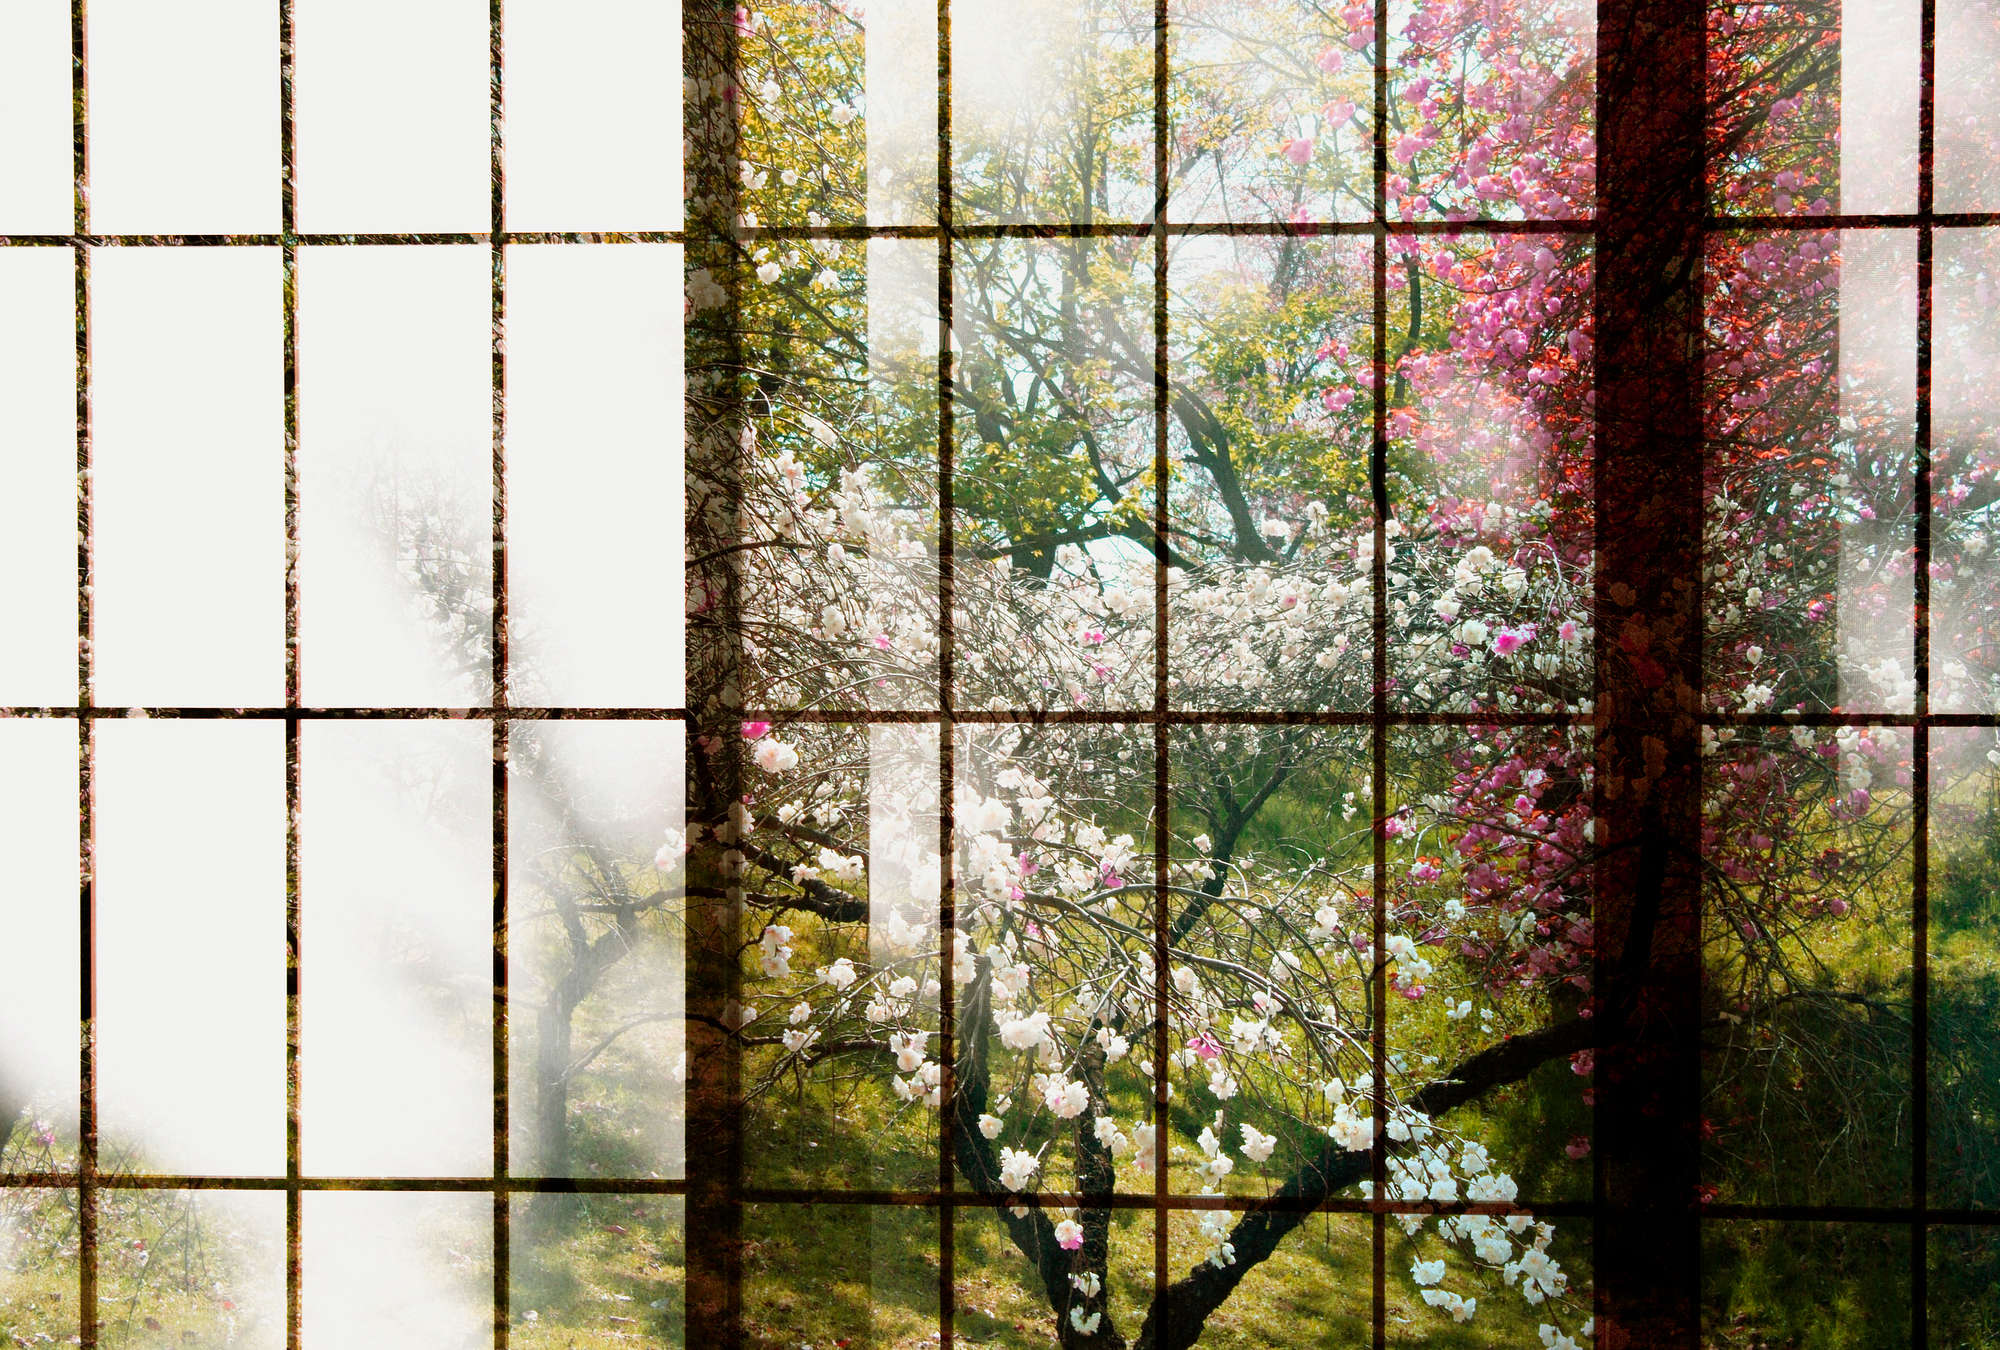             Orchard 1 - Photo wallpaper, Window with garden view - Green, Pink | Matt smooth fleece
        